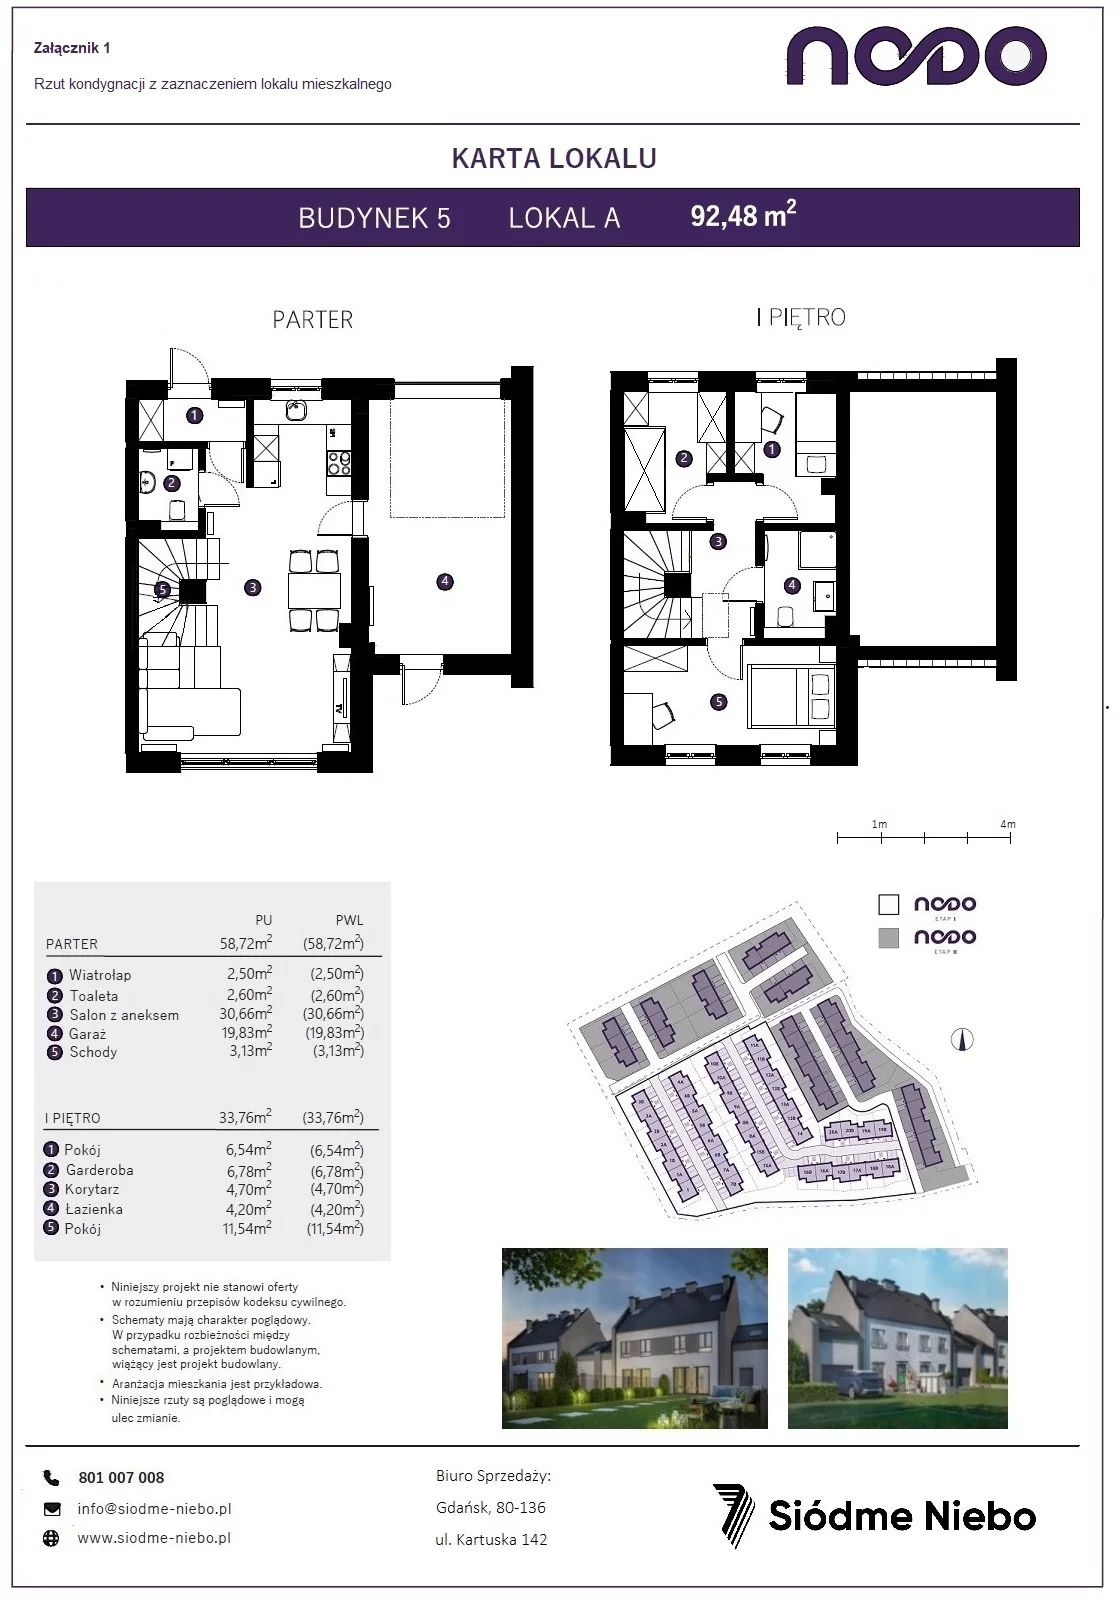 Mieszkanie 92,48 m², parter, oferta nr 5A, Osiedle Nodo, Gdańsk, Jasień, ul. Lubowidzka